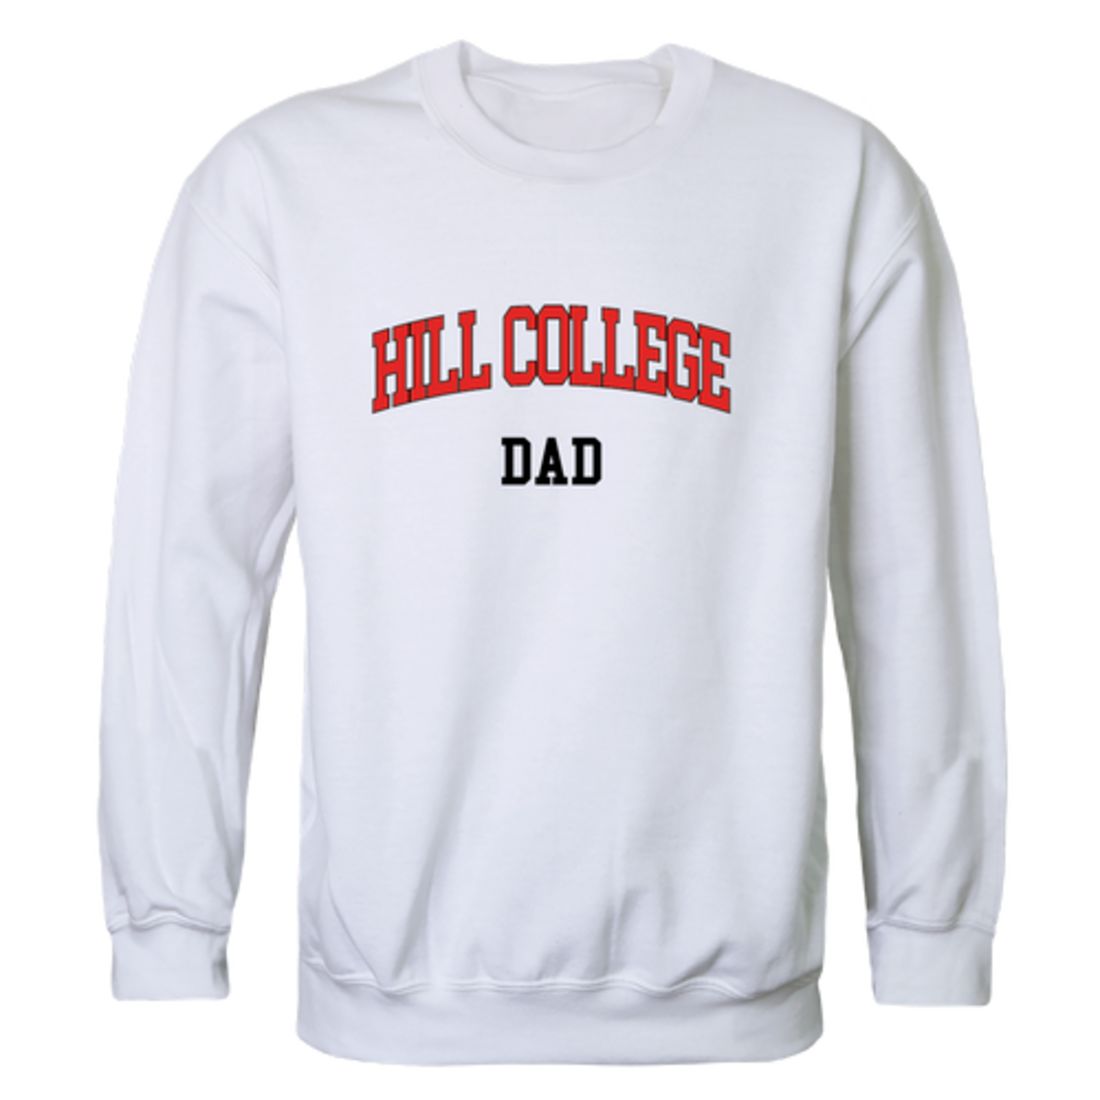 Hill College Rebels Dad Fleece Crewneck Pullover Sweatshirt